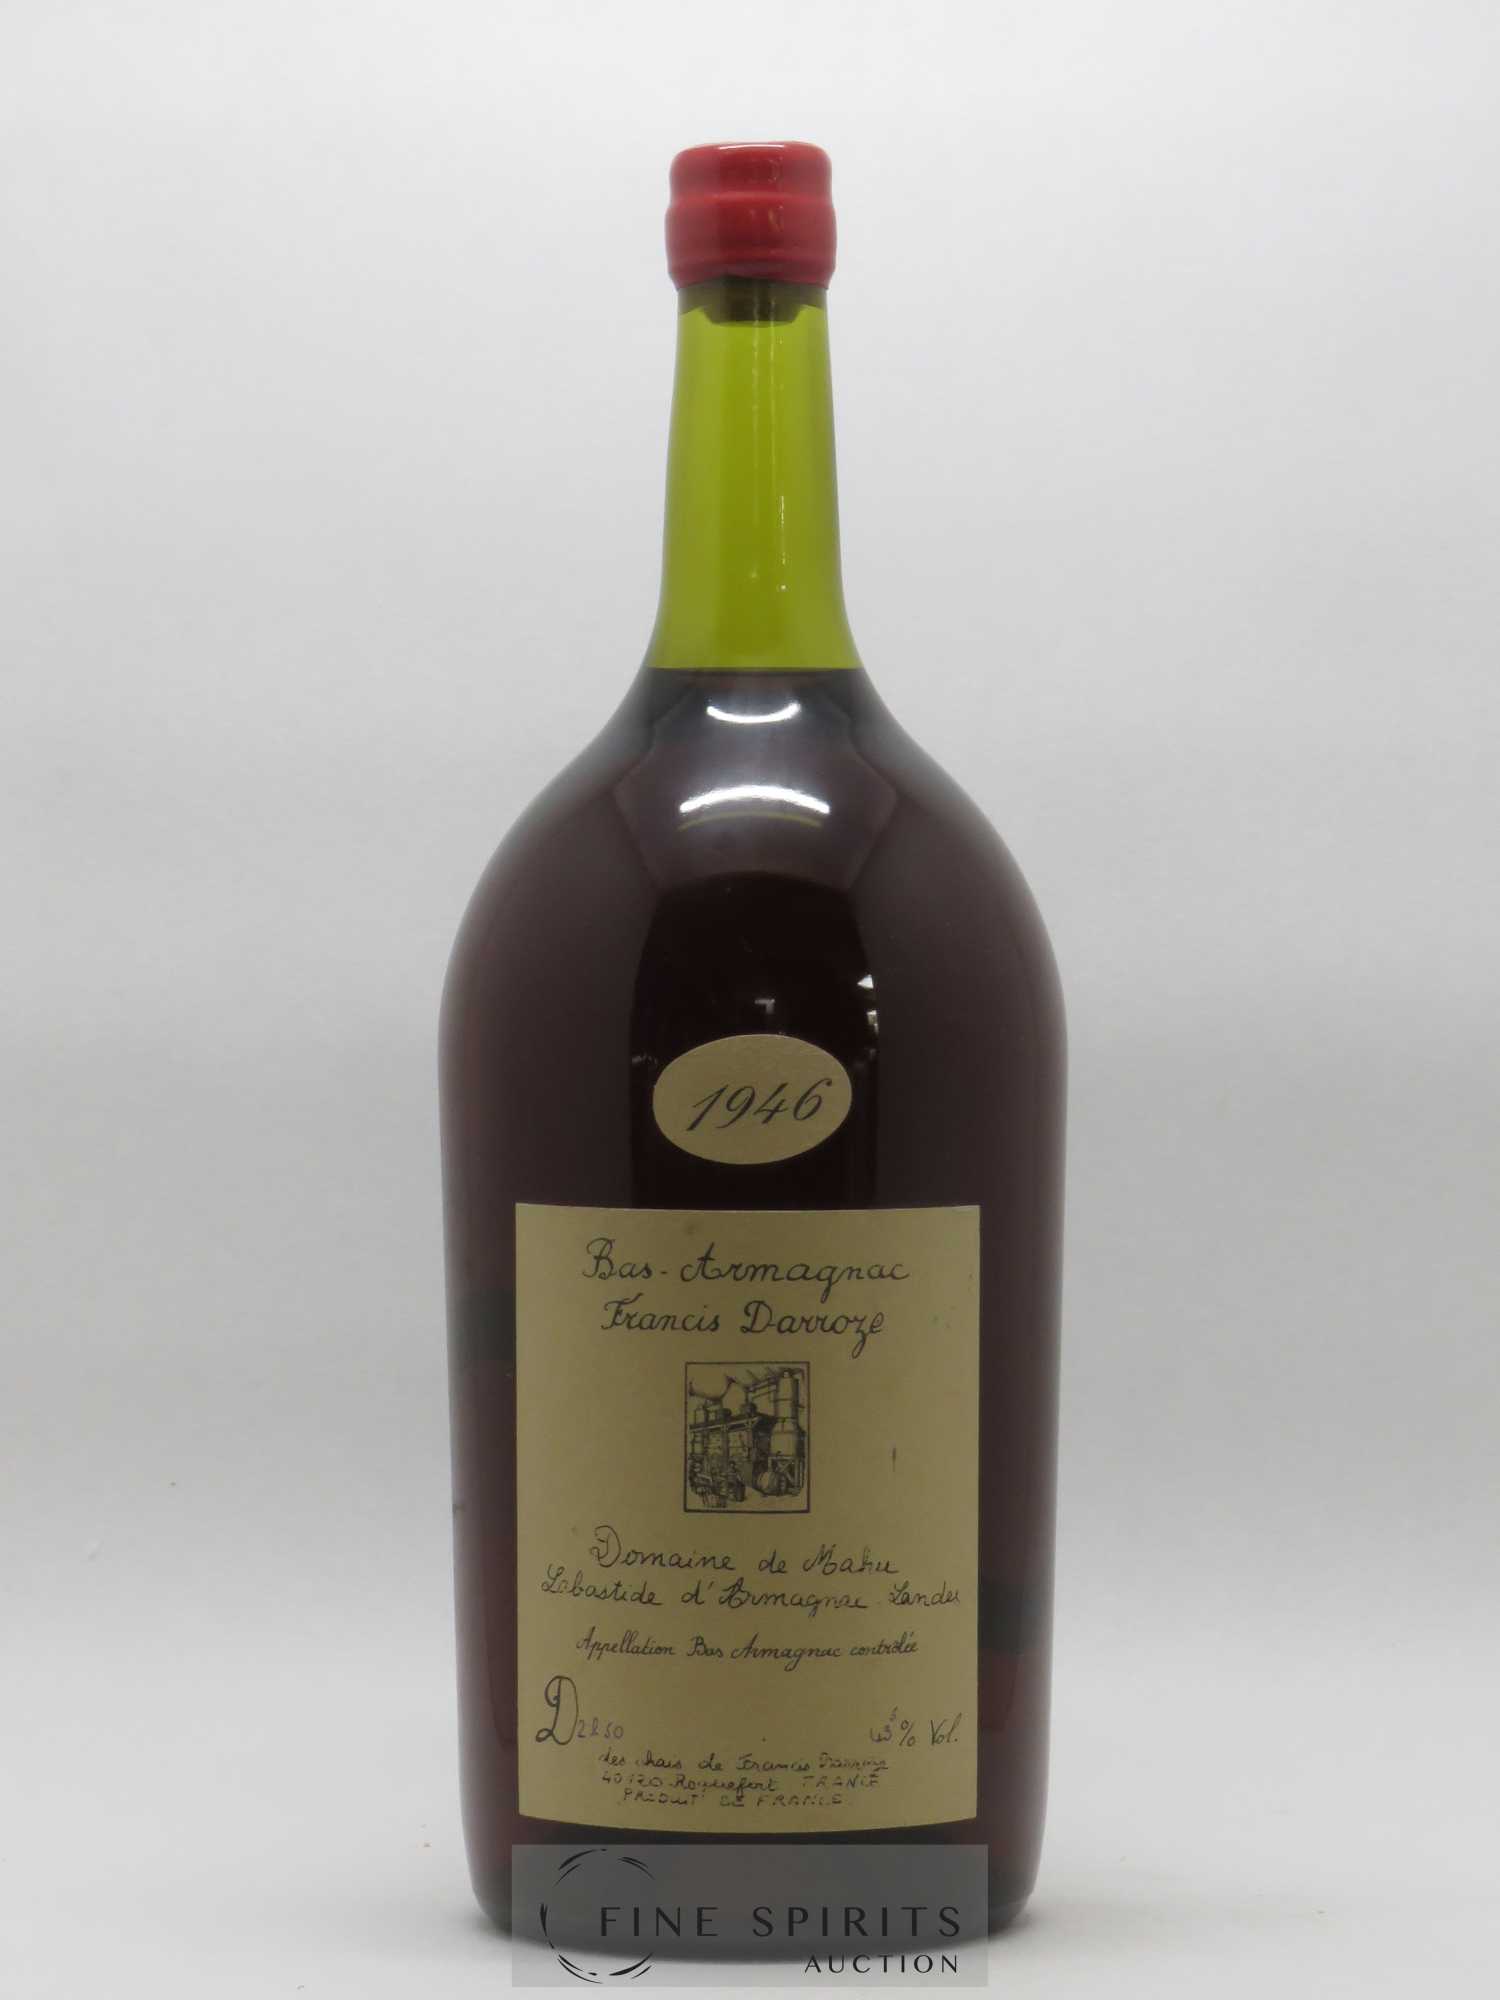 Francis Darroze 1946 Of. Domaine de Mahu mis en bouteille en 1998 